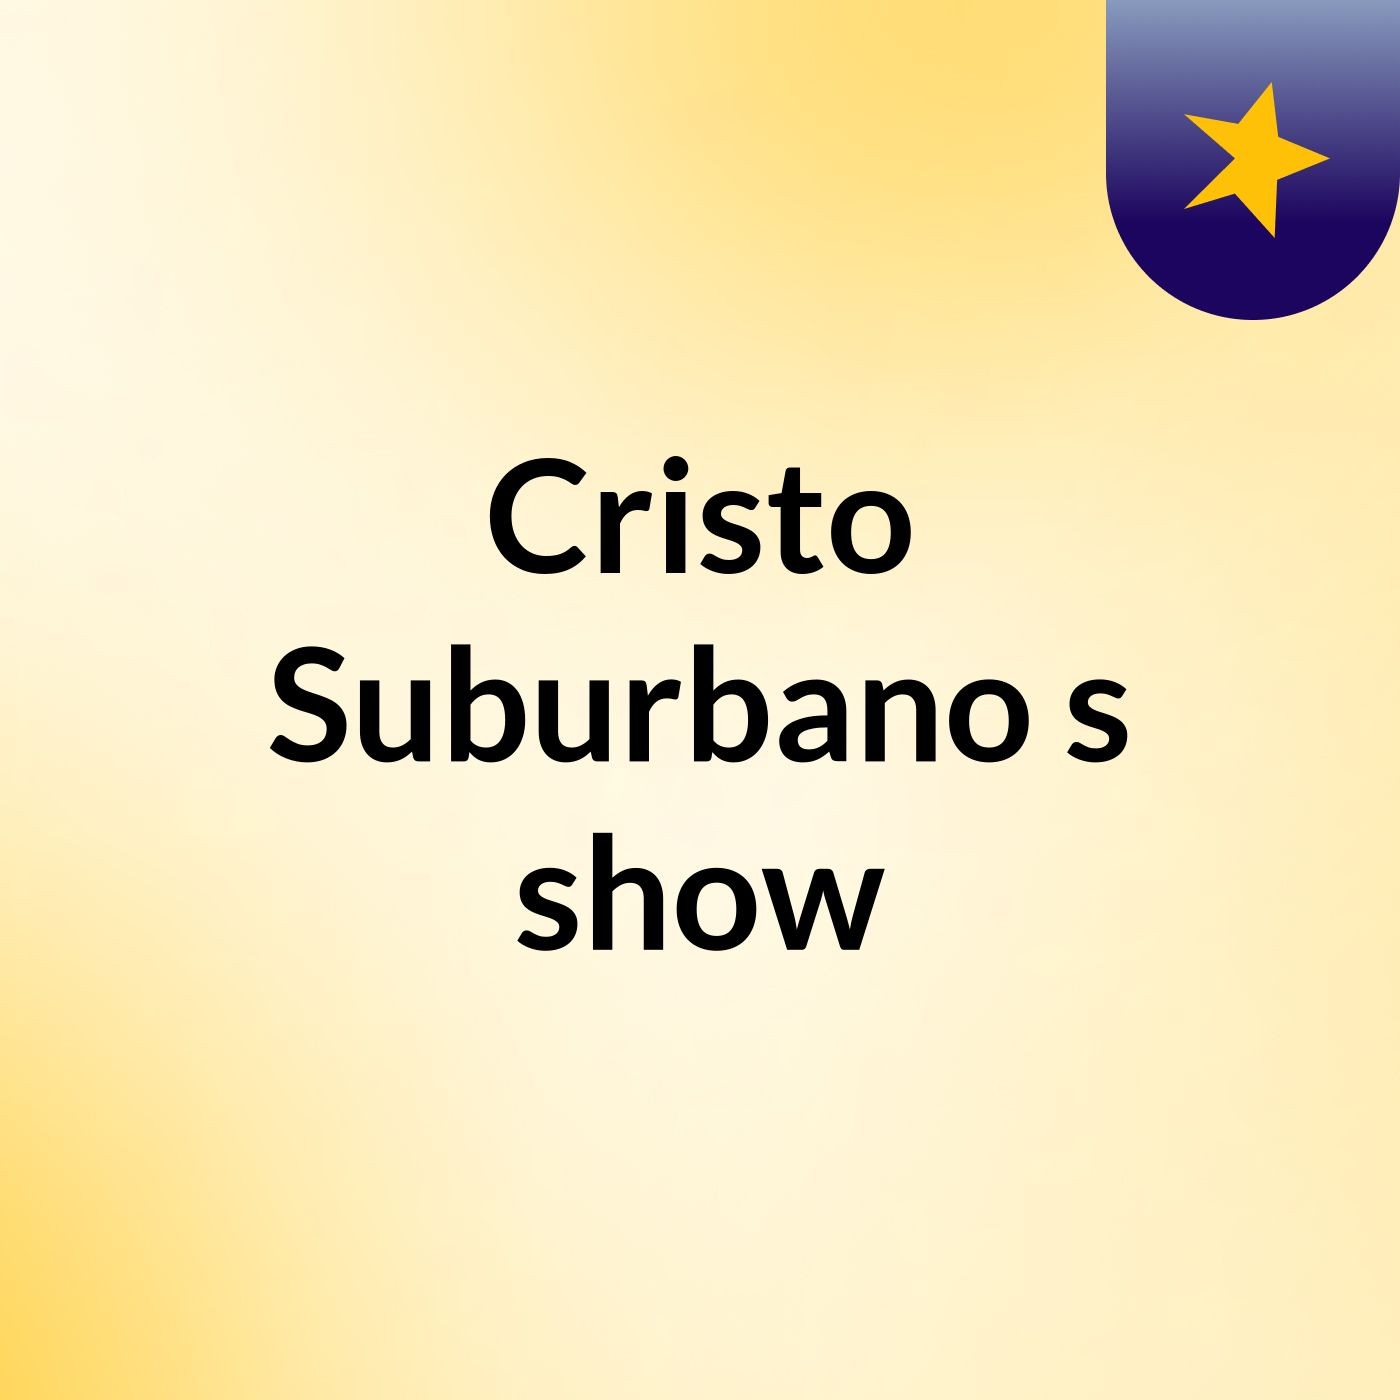 Cristo Suburbano's show